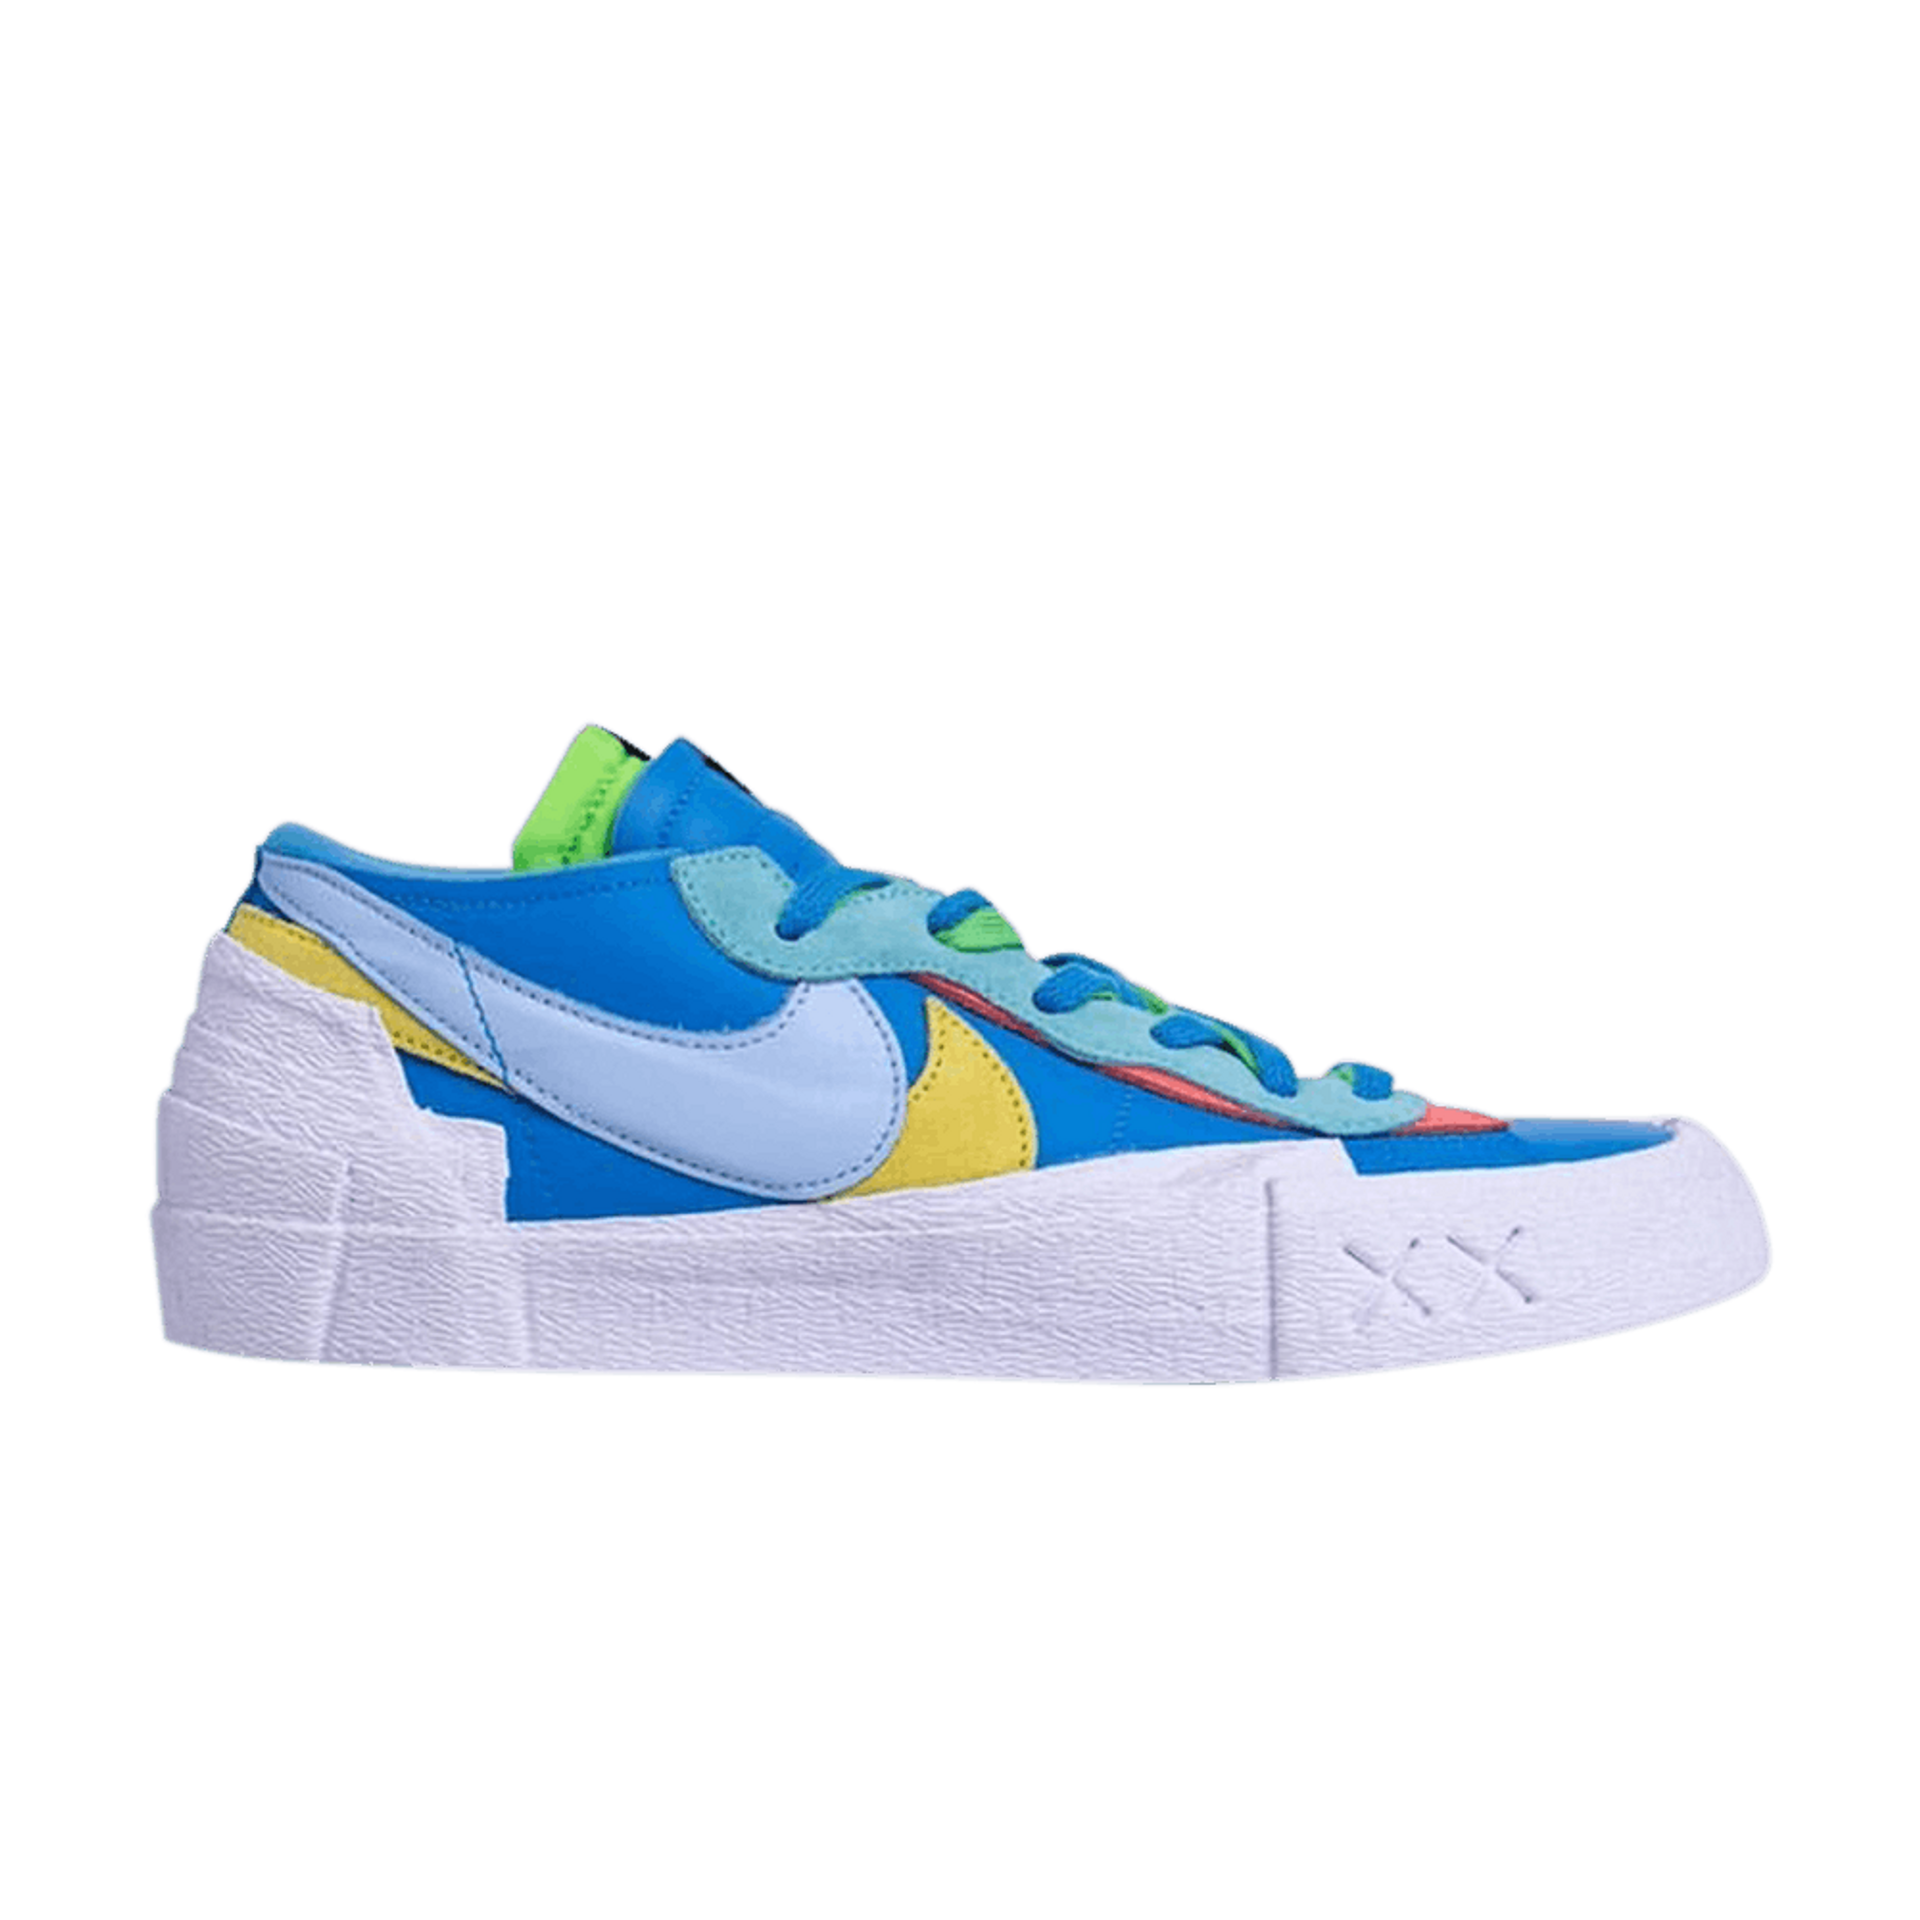 Nike KAWS x sacai x Blazer Low 'Neptune Blue' - DM7901 400 | Ox Street